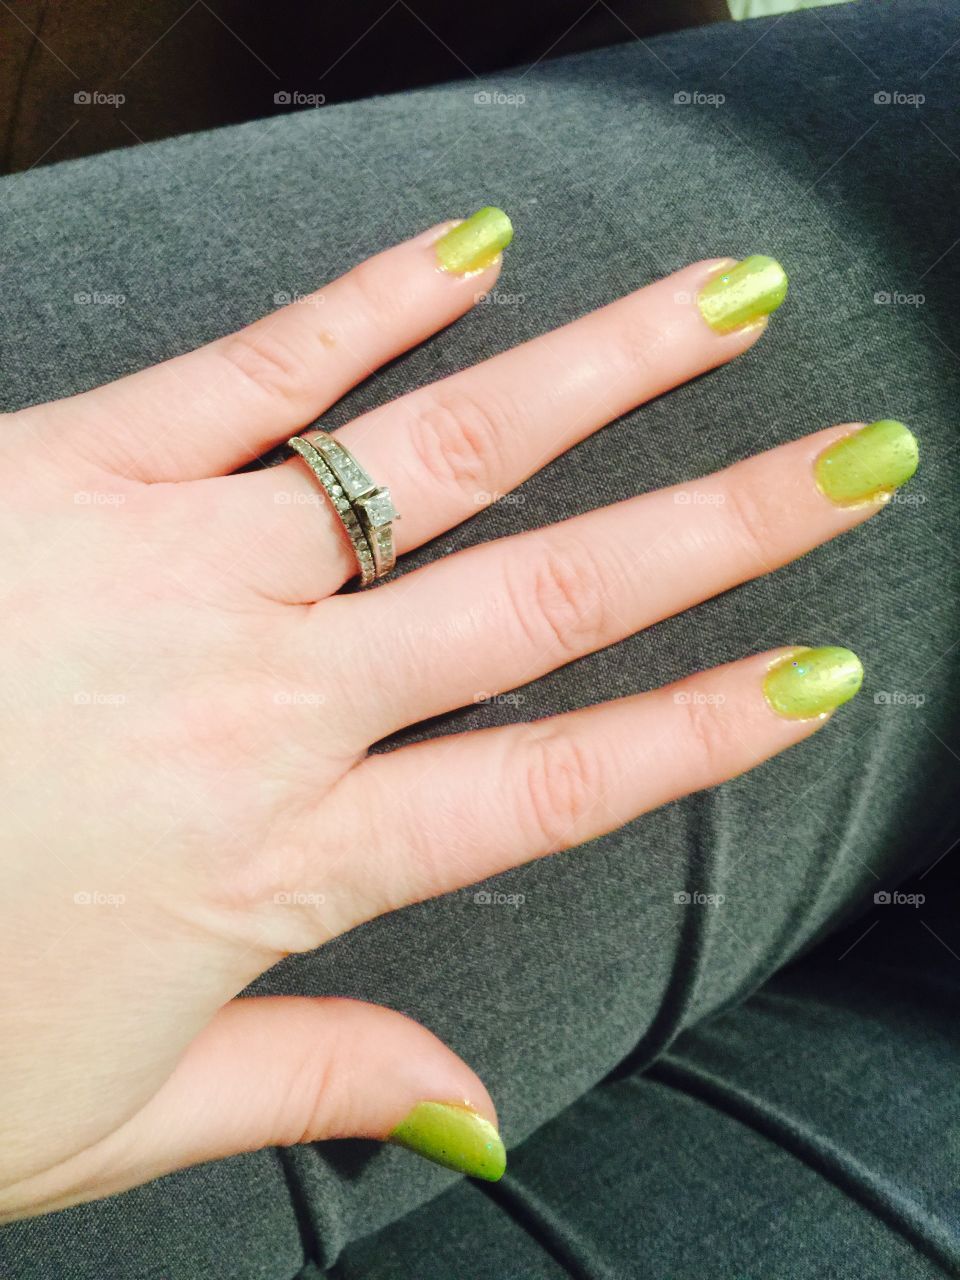 Wedding Ring and lime green nail polish